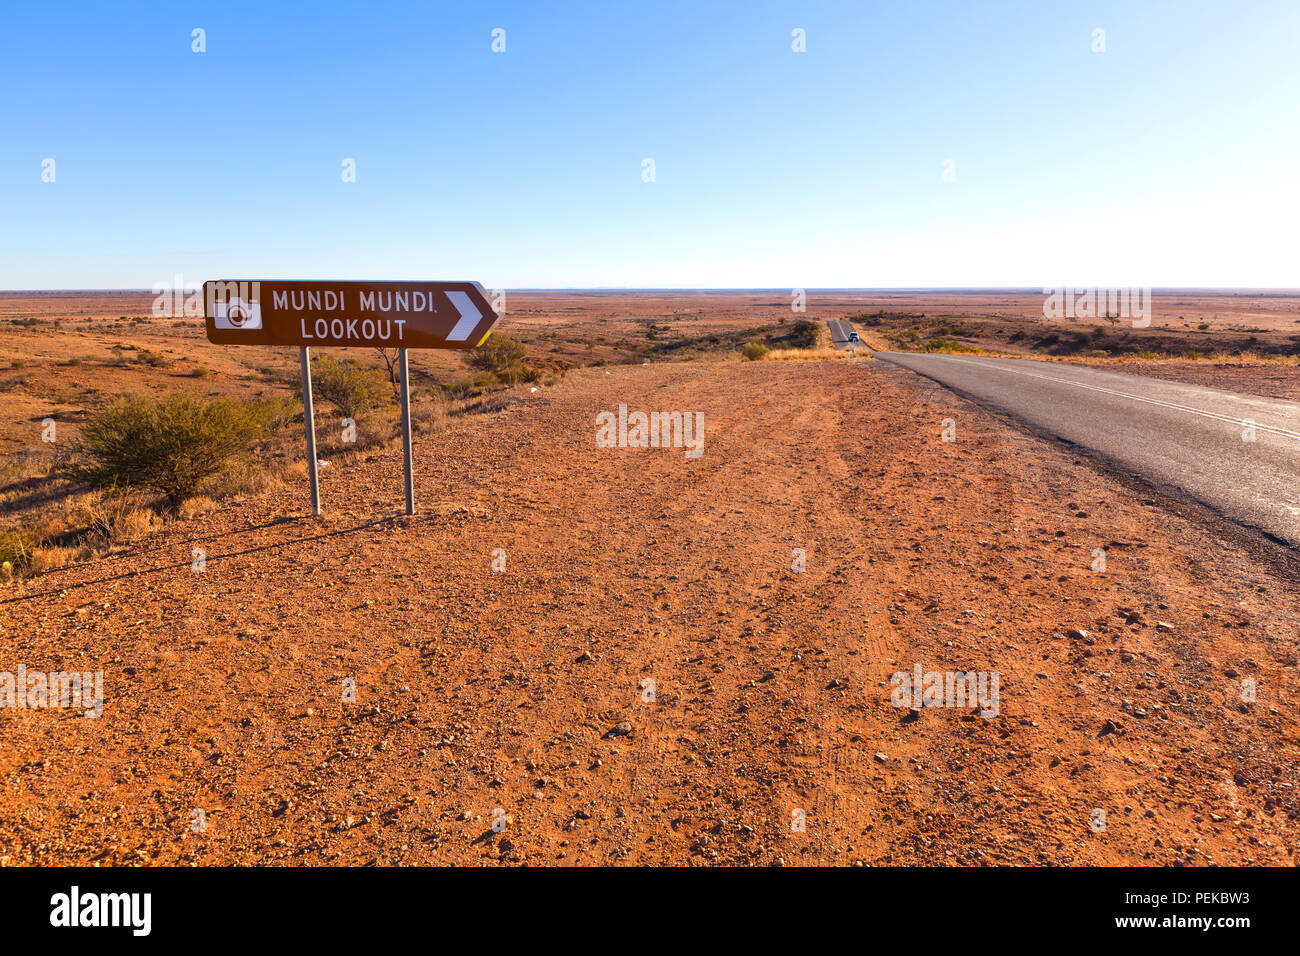 Bild genommen, während für einen Familienurlaub in den regionalen outback Stadt Broken Hill in New South Wales, Australien Stockfoto